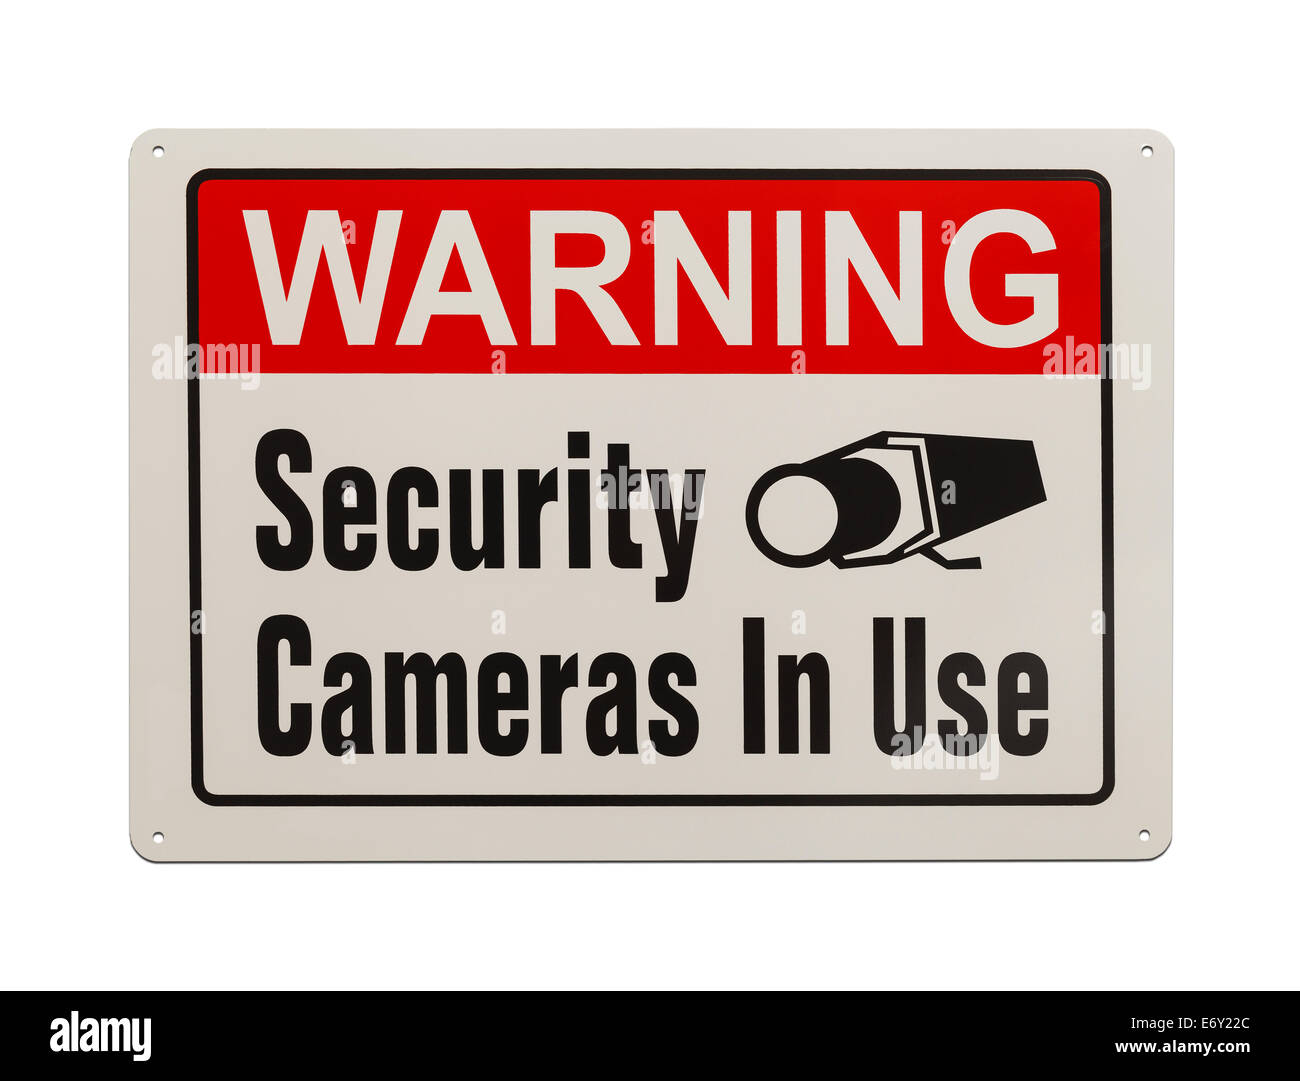 Rot, schwarz und weiß, Sicherheit Kamera Warnzeichen Isolated on White Background. Stockfoto